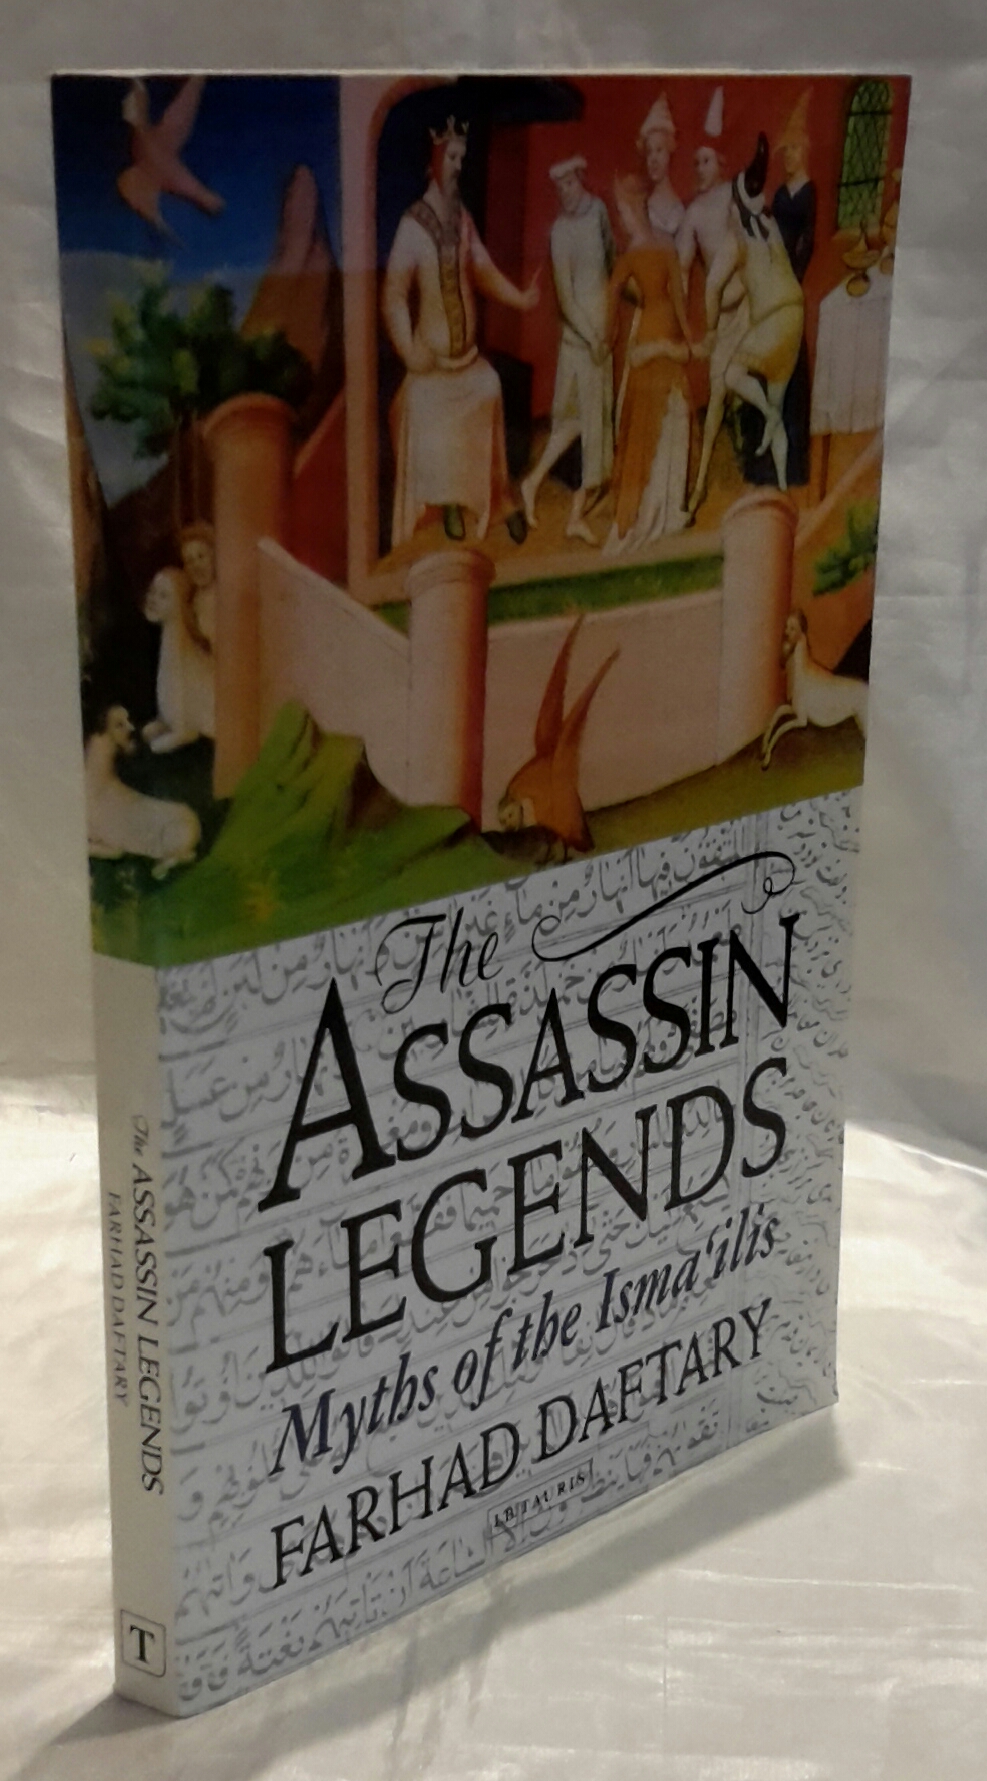 The Assassin Legends. Myths of the Isma'ilis. - DAFTARY, Farhad.